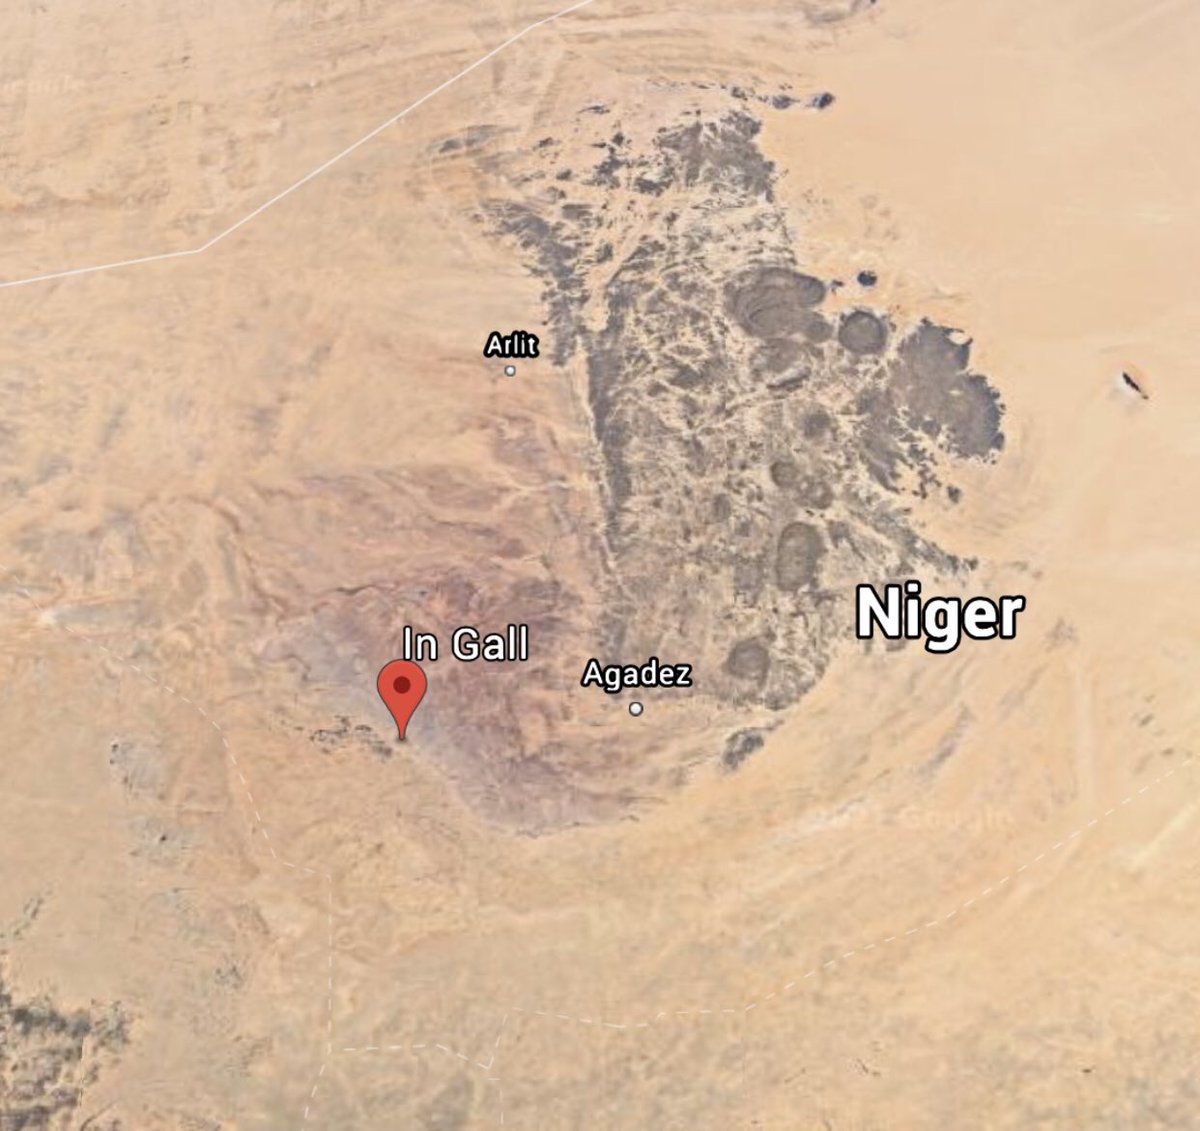 #Niger atterrissage d’urgence d’un #MQ1C #GrayEagle #SkyWarrior dans la région #Ingall #HellFire visible sous l’aile gauche